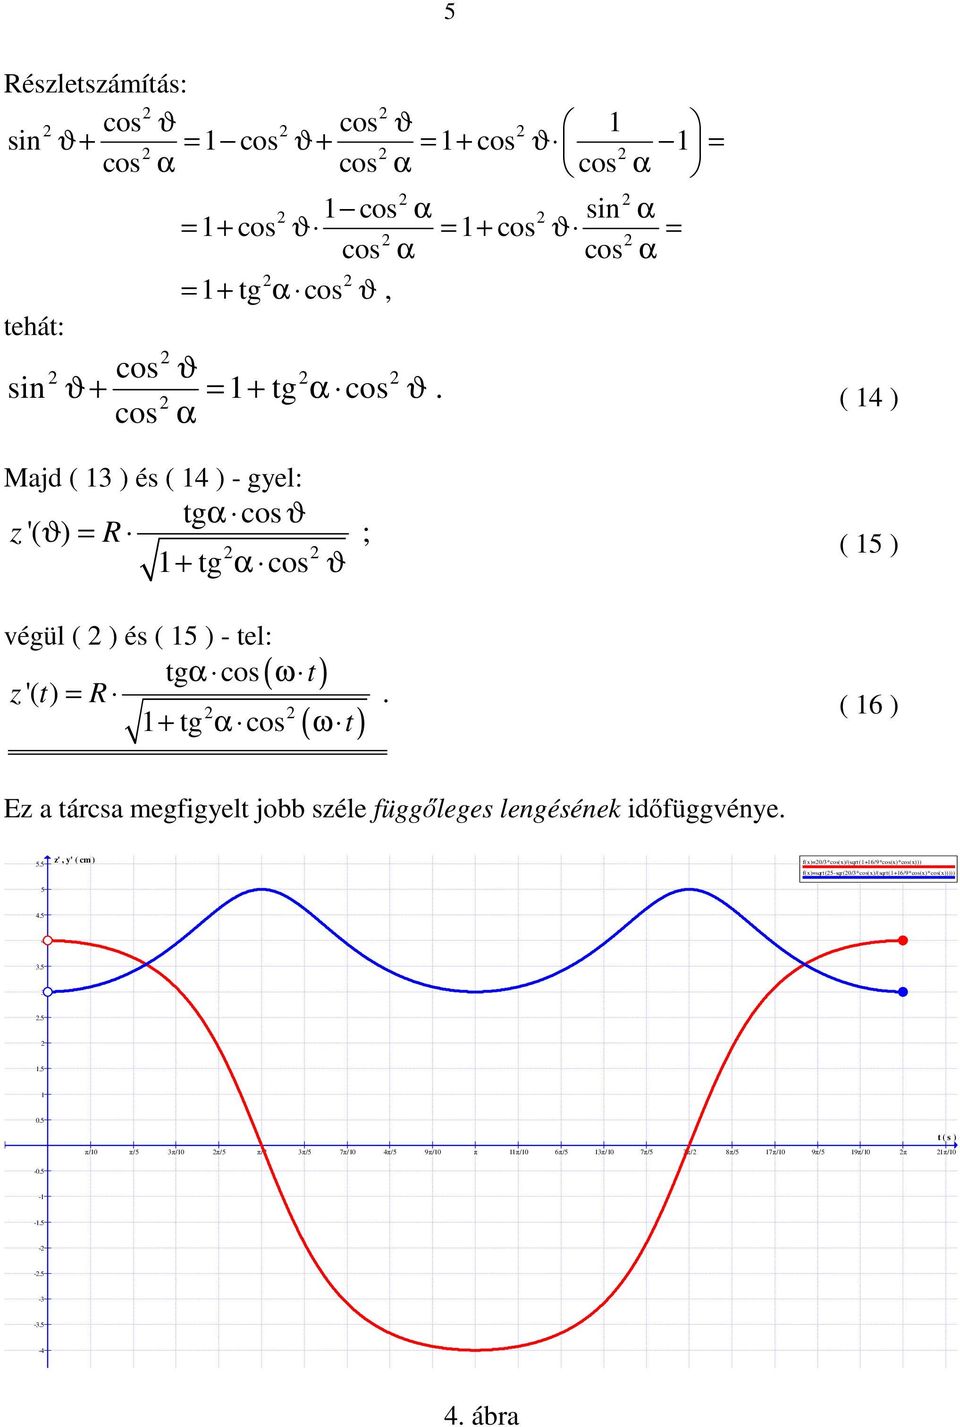 tárcsa megfigyelt jobb széle függőleges lengésének időfüggvénye 55 z', y' ( cm ) f(x)=0/3*cos(x)/(sqrt(1+16/9*cos(x)*cos(x)))